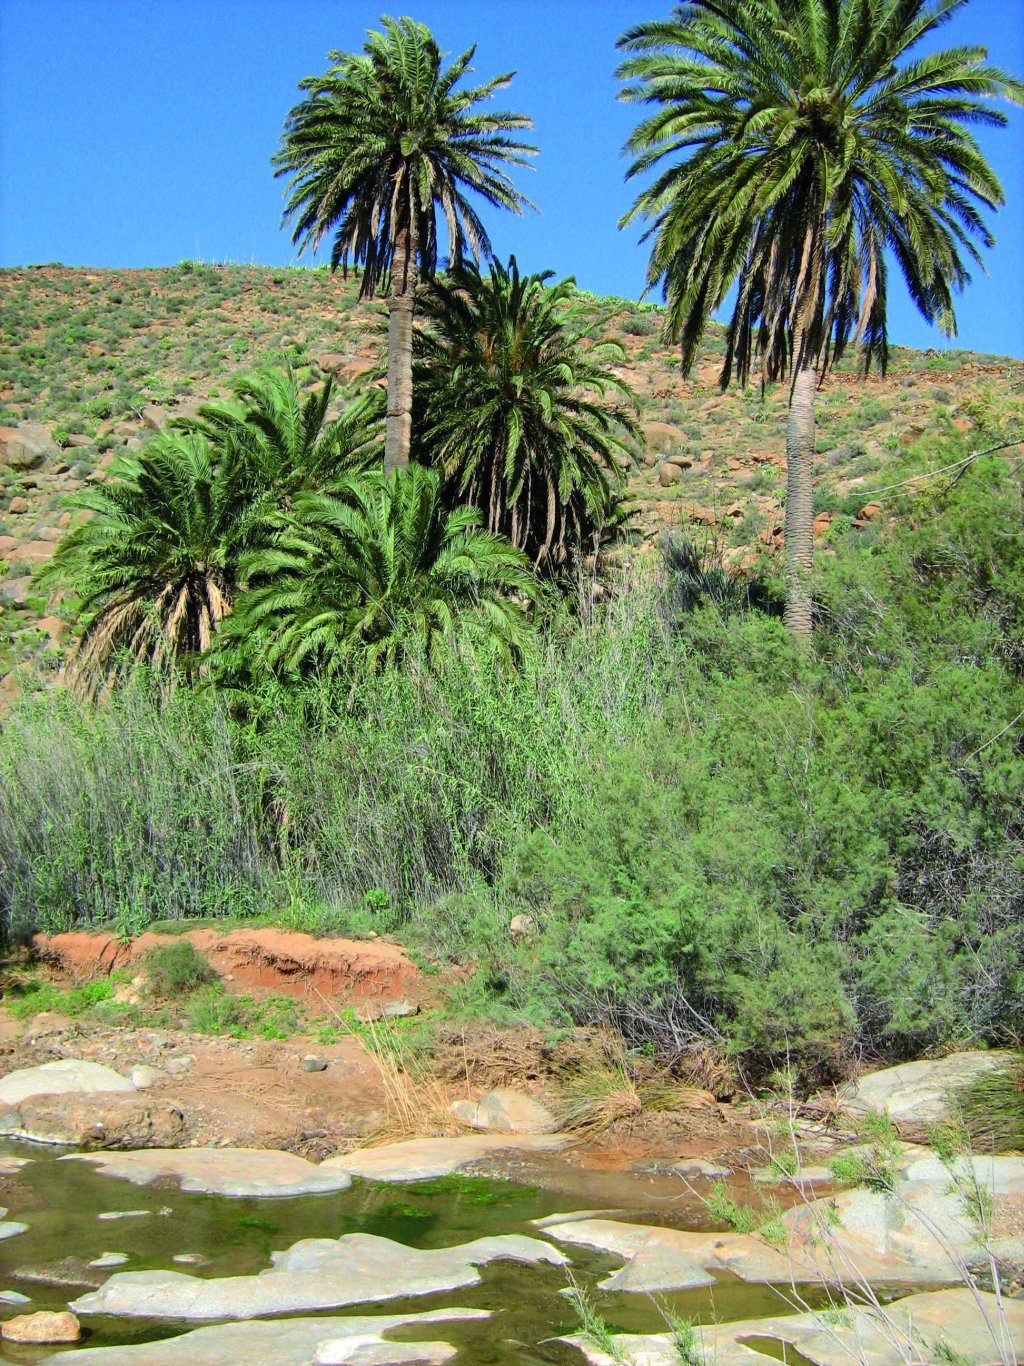 El palmeral junto al riachuelo da un aspecto de oasis al paisaje